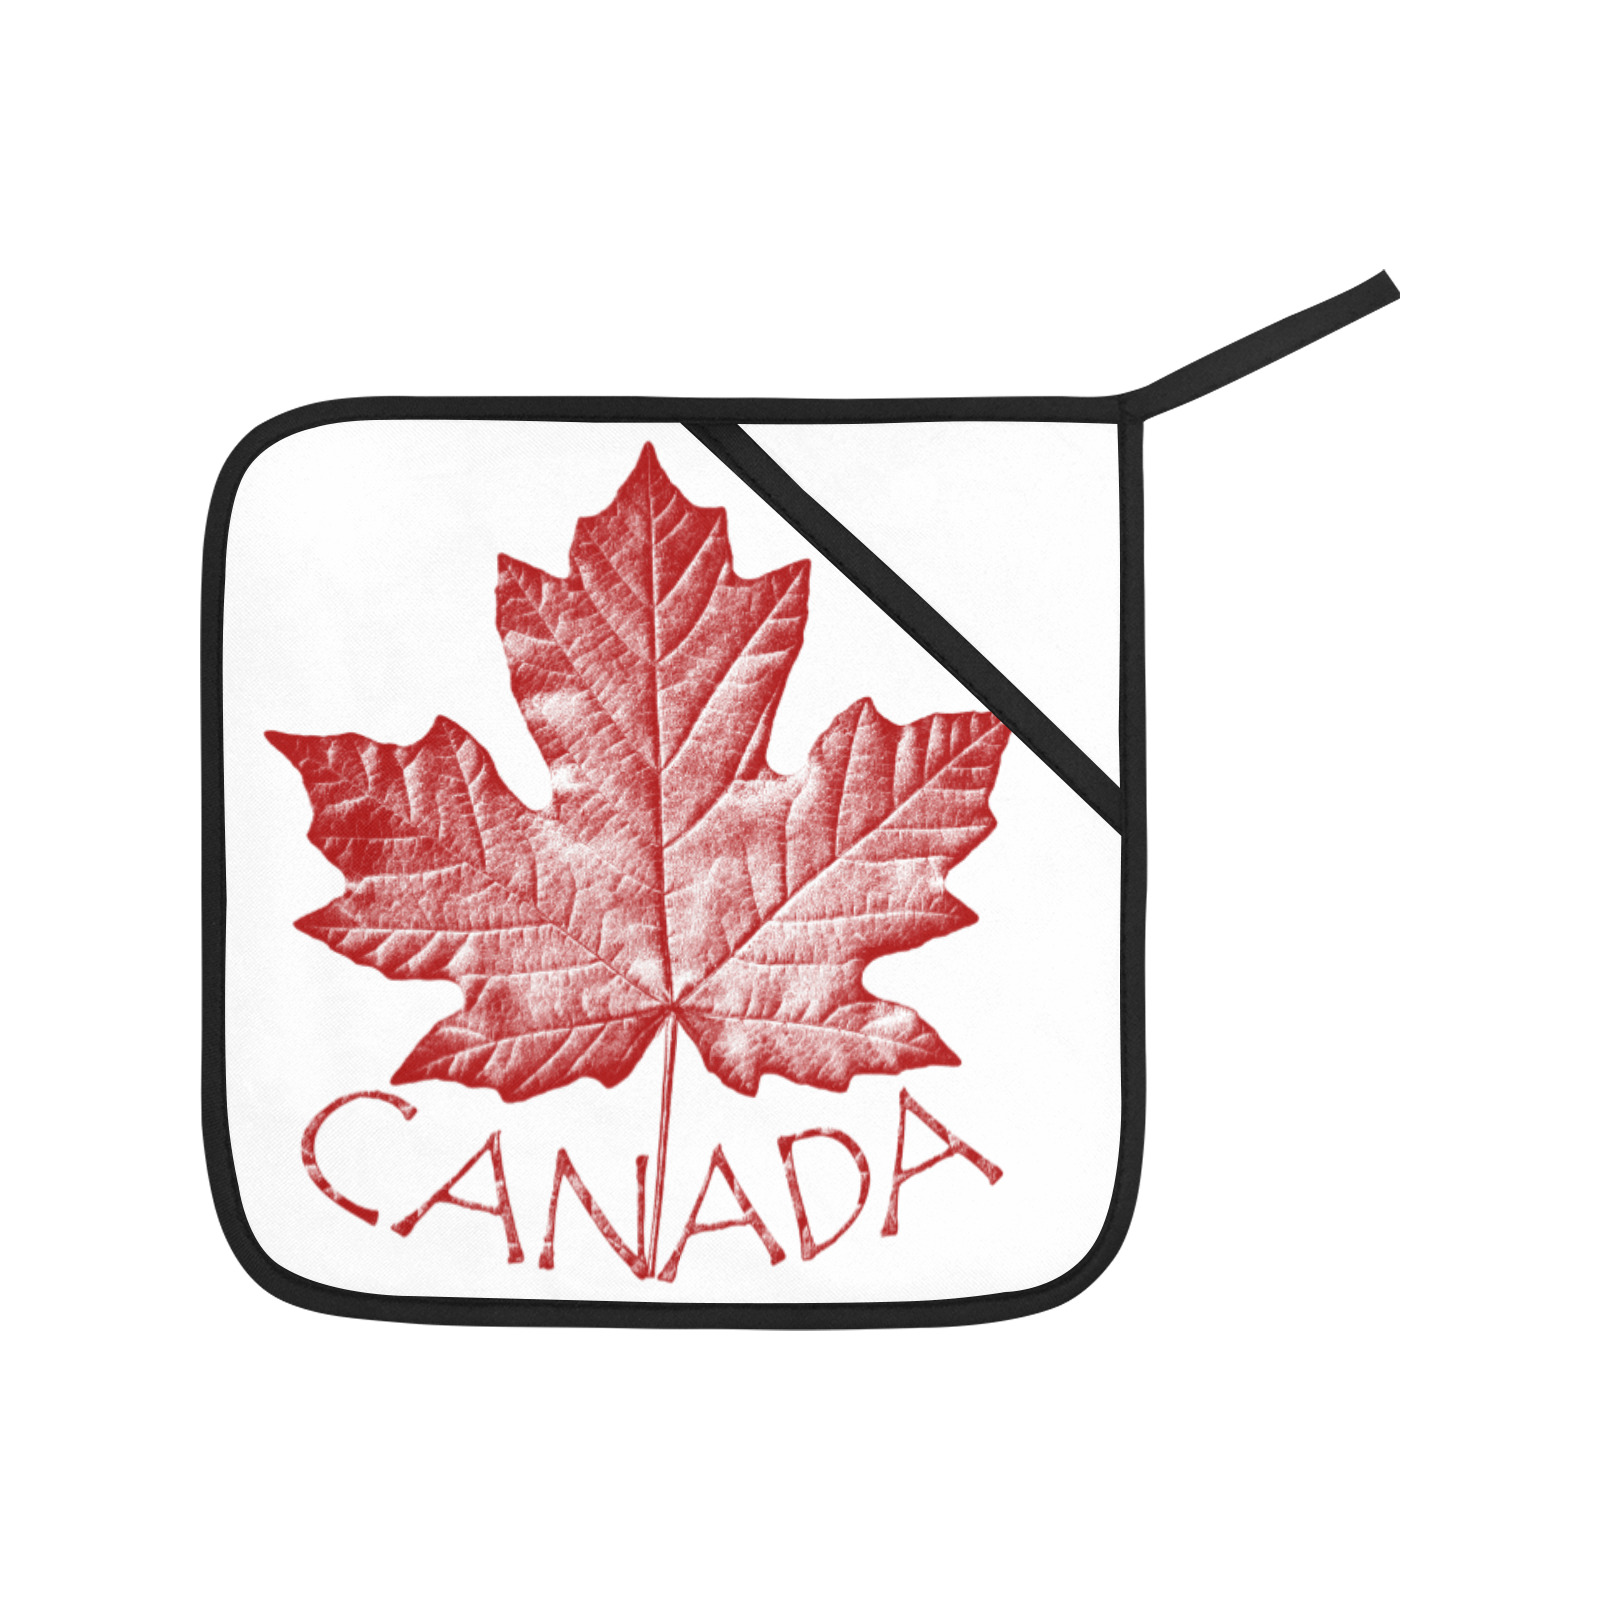 Vintage Canada Maple Leaf Oven Mitt & Pot Holder